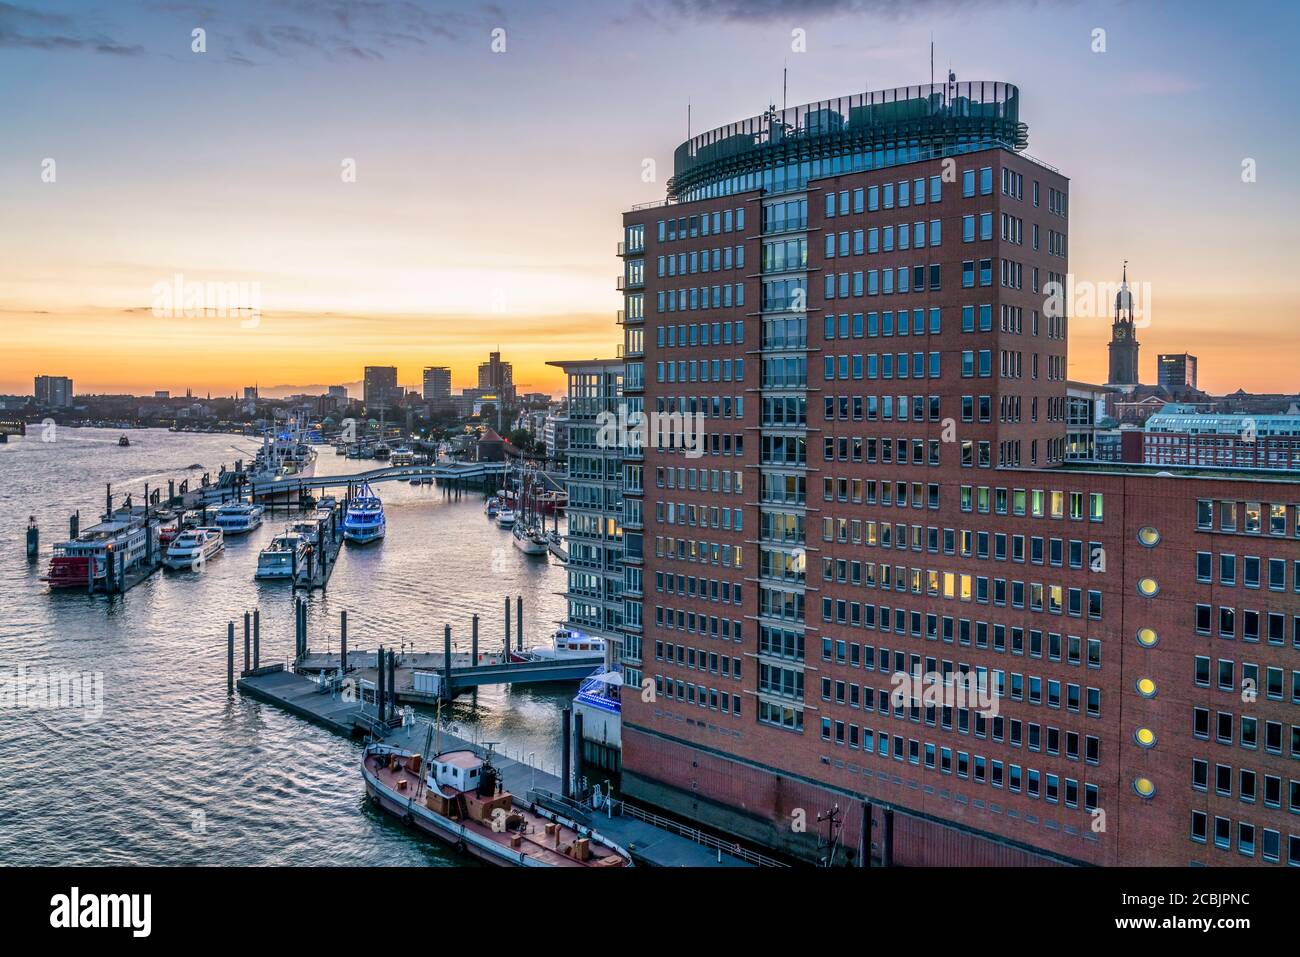 Ausblick von der Elbphilharmonie auf das Hanseatic Trade Center, Sandtorhafen, Speicherstadt, Hafencité, Hambourg, Allemagne, Europa Banque D'Images